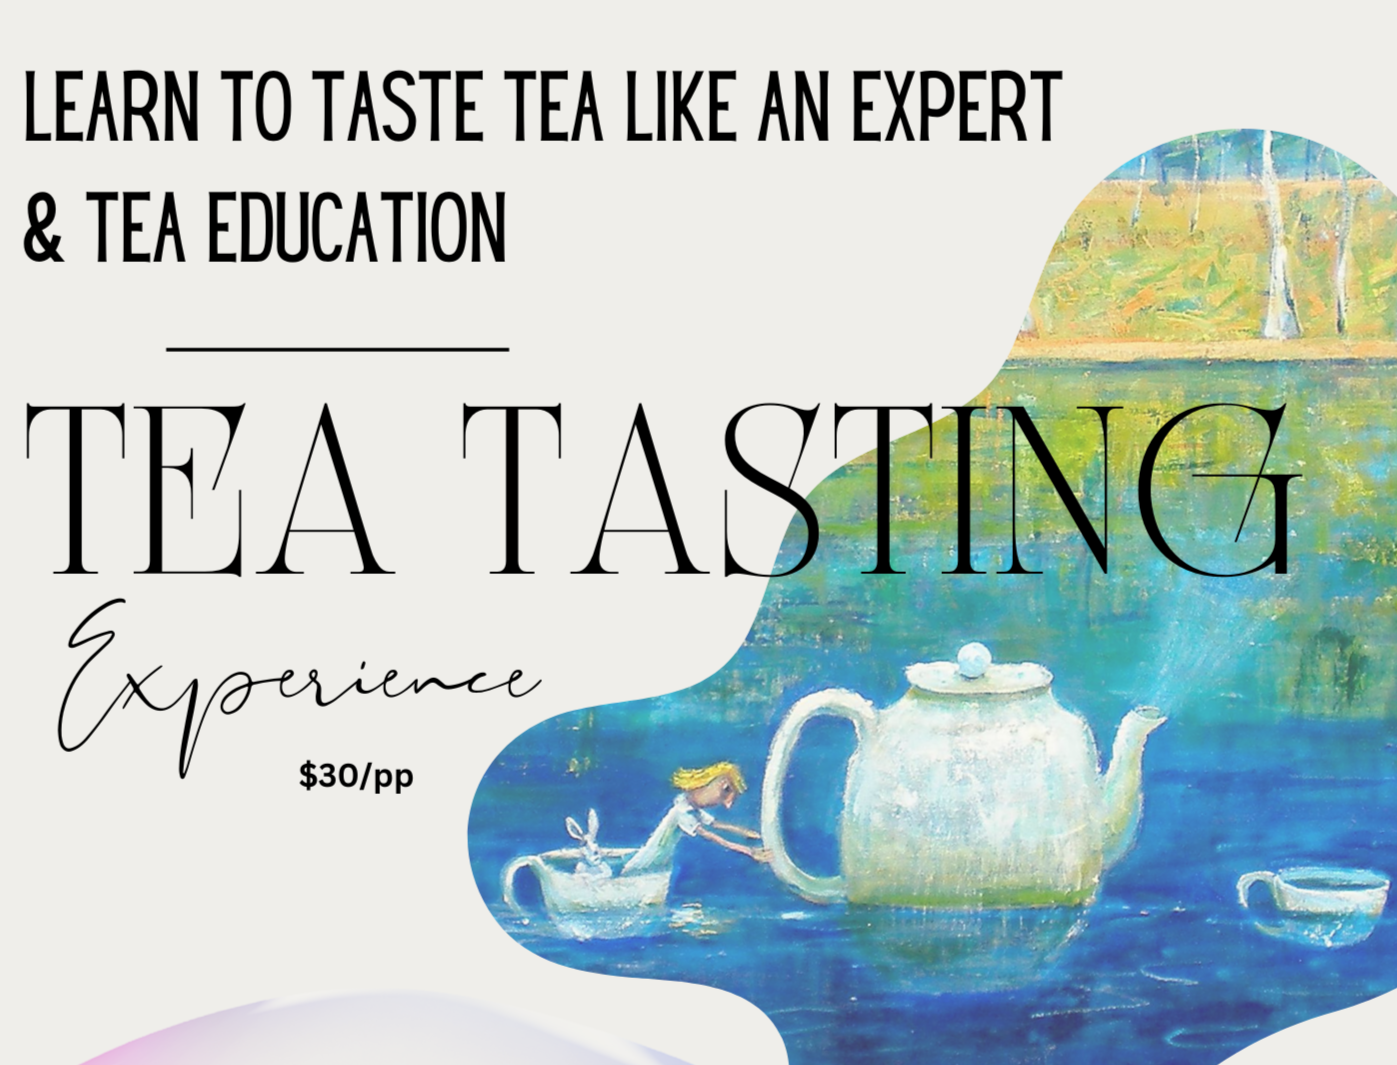 TEA TASTING EXPERIENCE